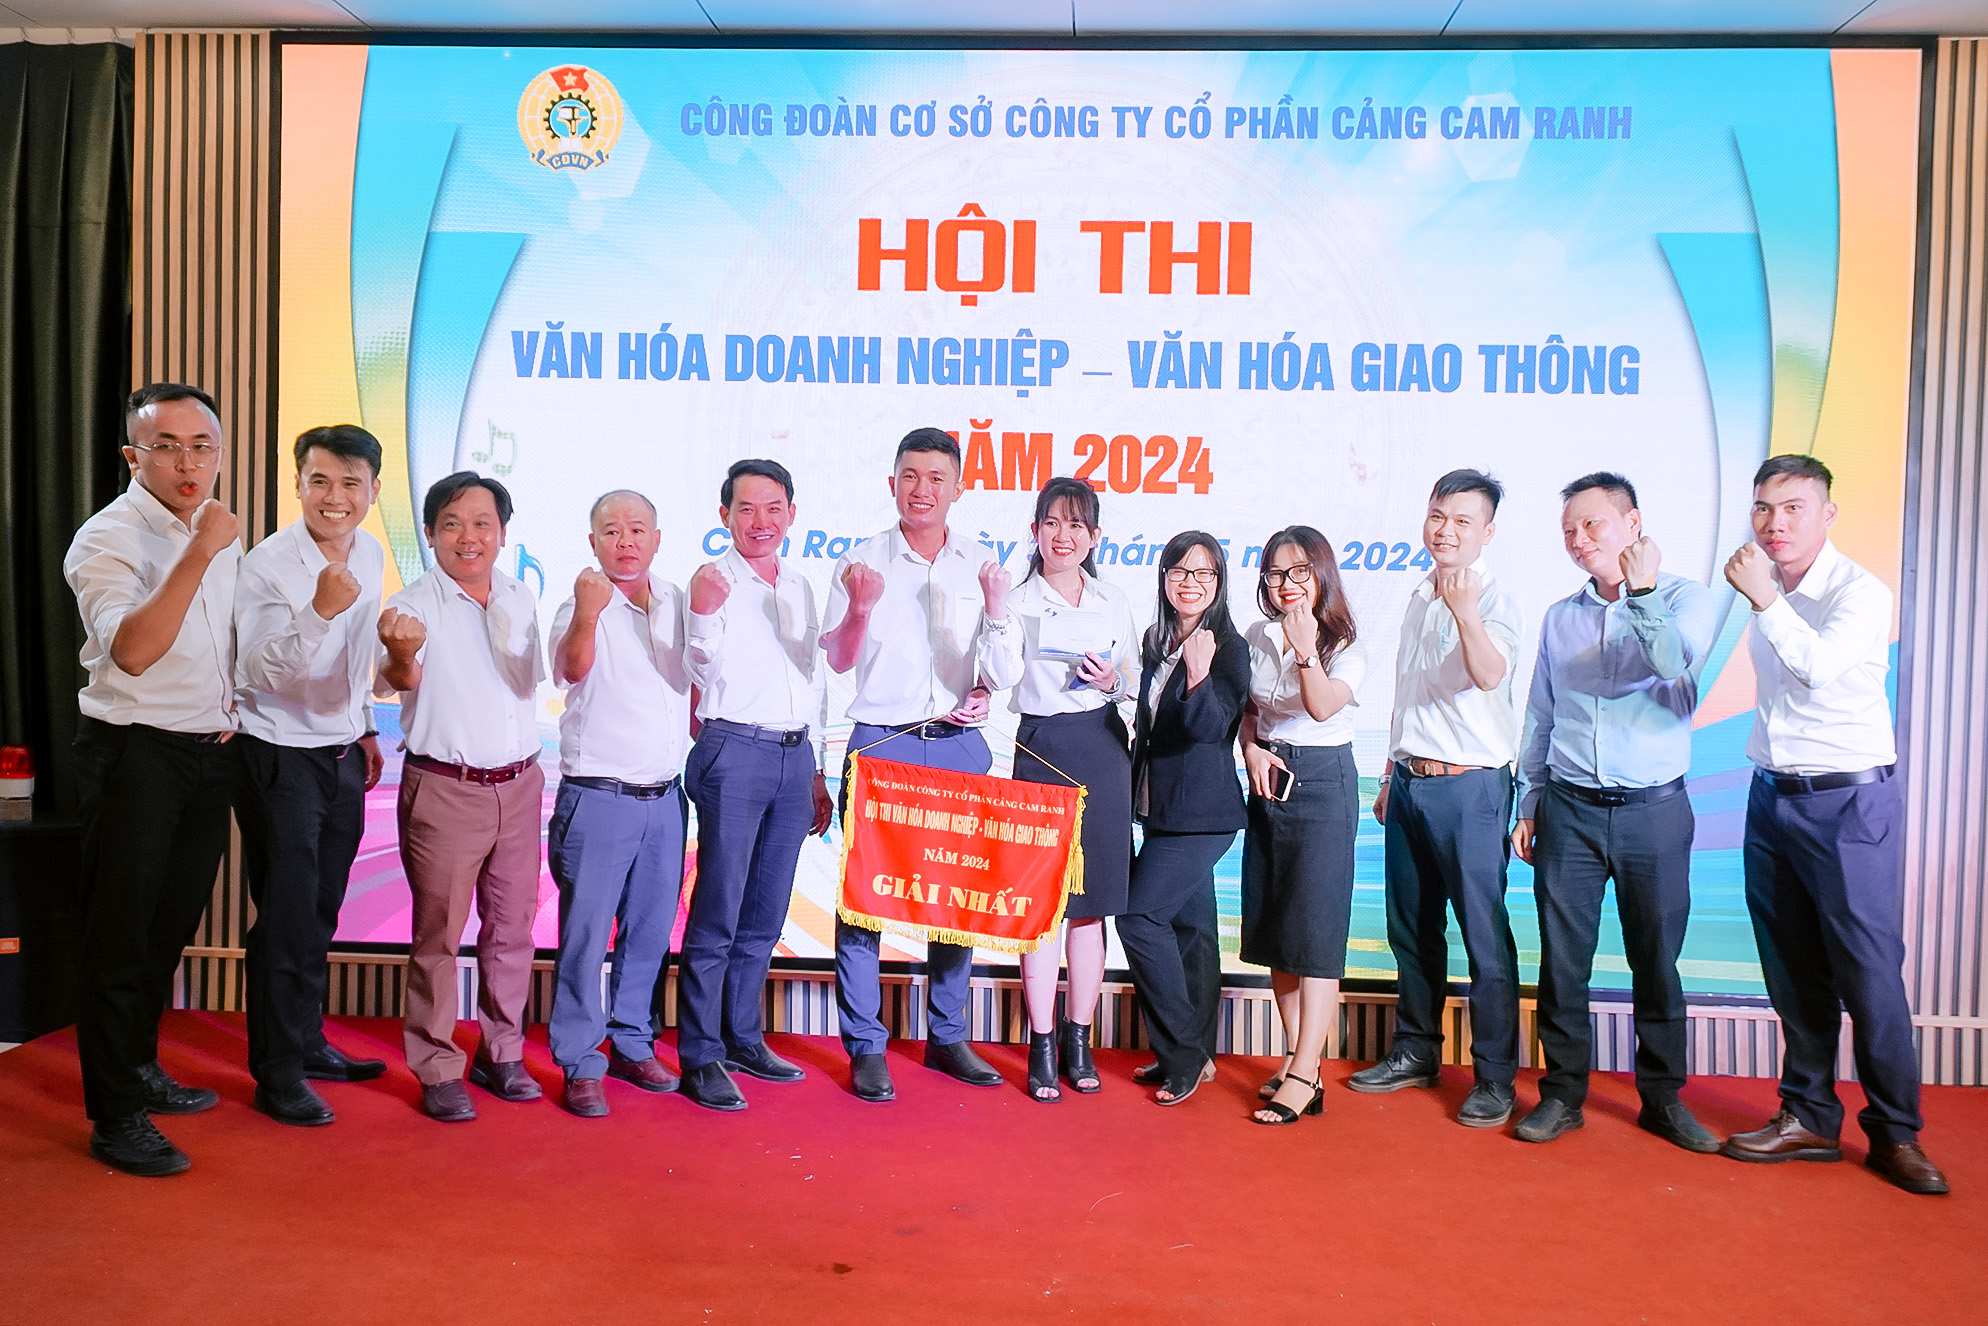 Công đoàn cơ sở Cảng Cam Ranh tổ chức thành công hội thi Văn hóa doanh nghiệp – Văn hóa giao thông 2024